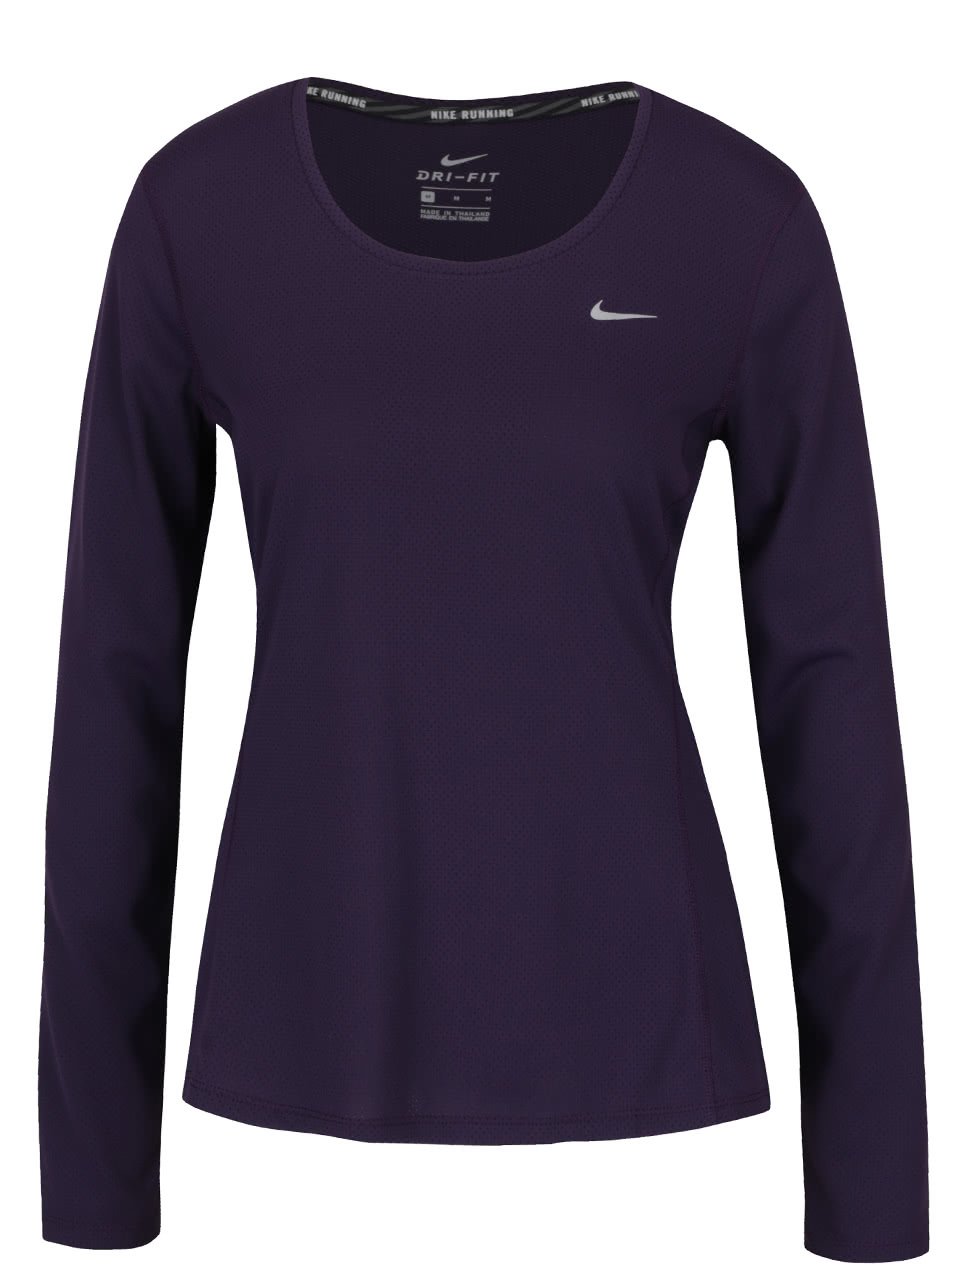 Fialové sportovní tričko s dlouhým rukávem Nike Contour